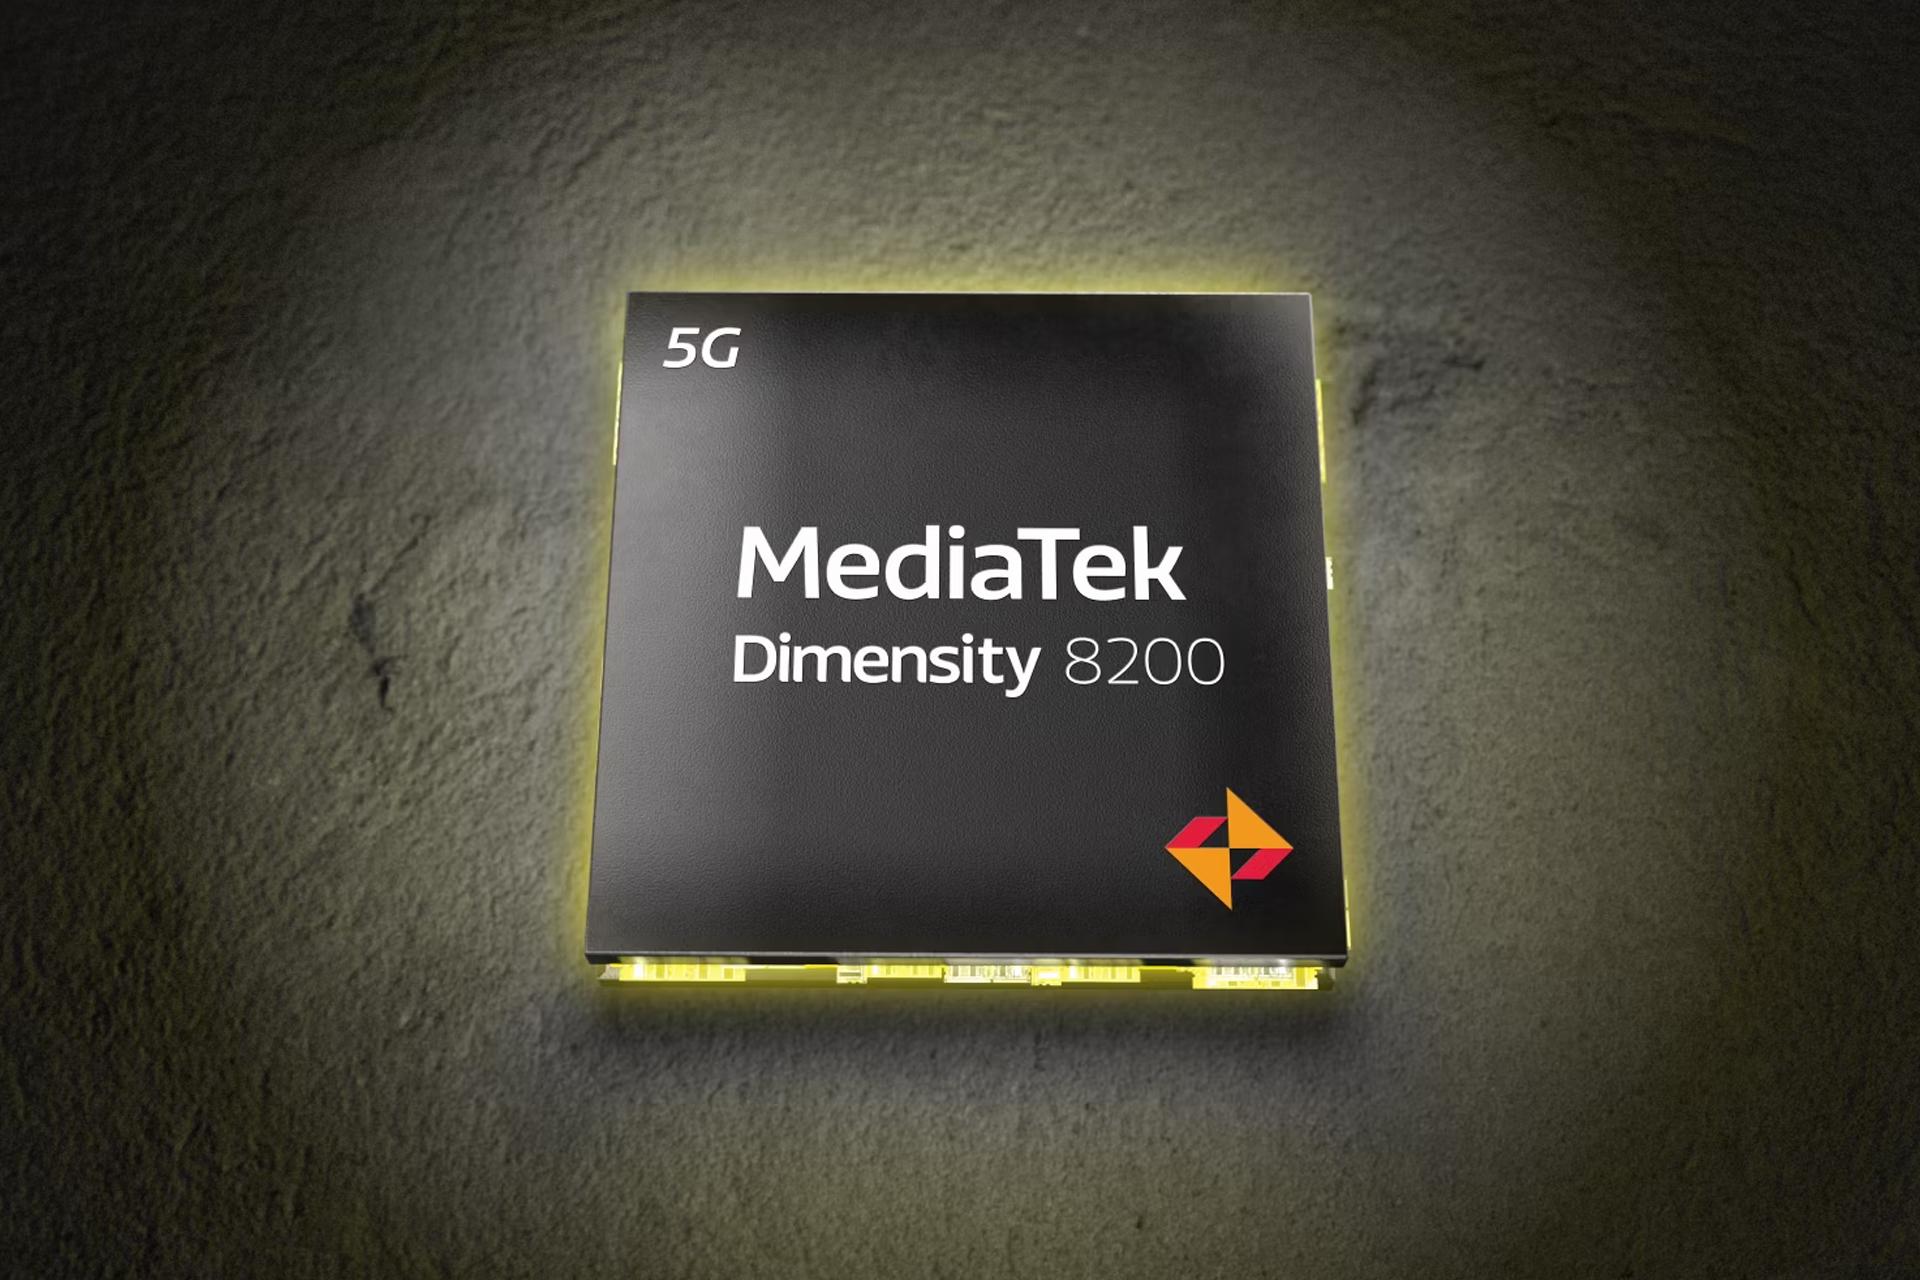 mediatek dimensity 8200 mobile soc